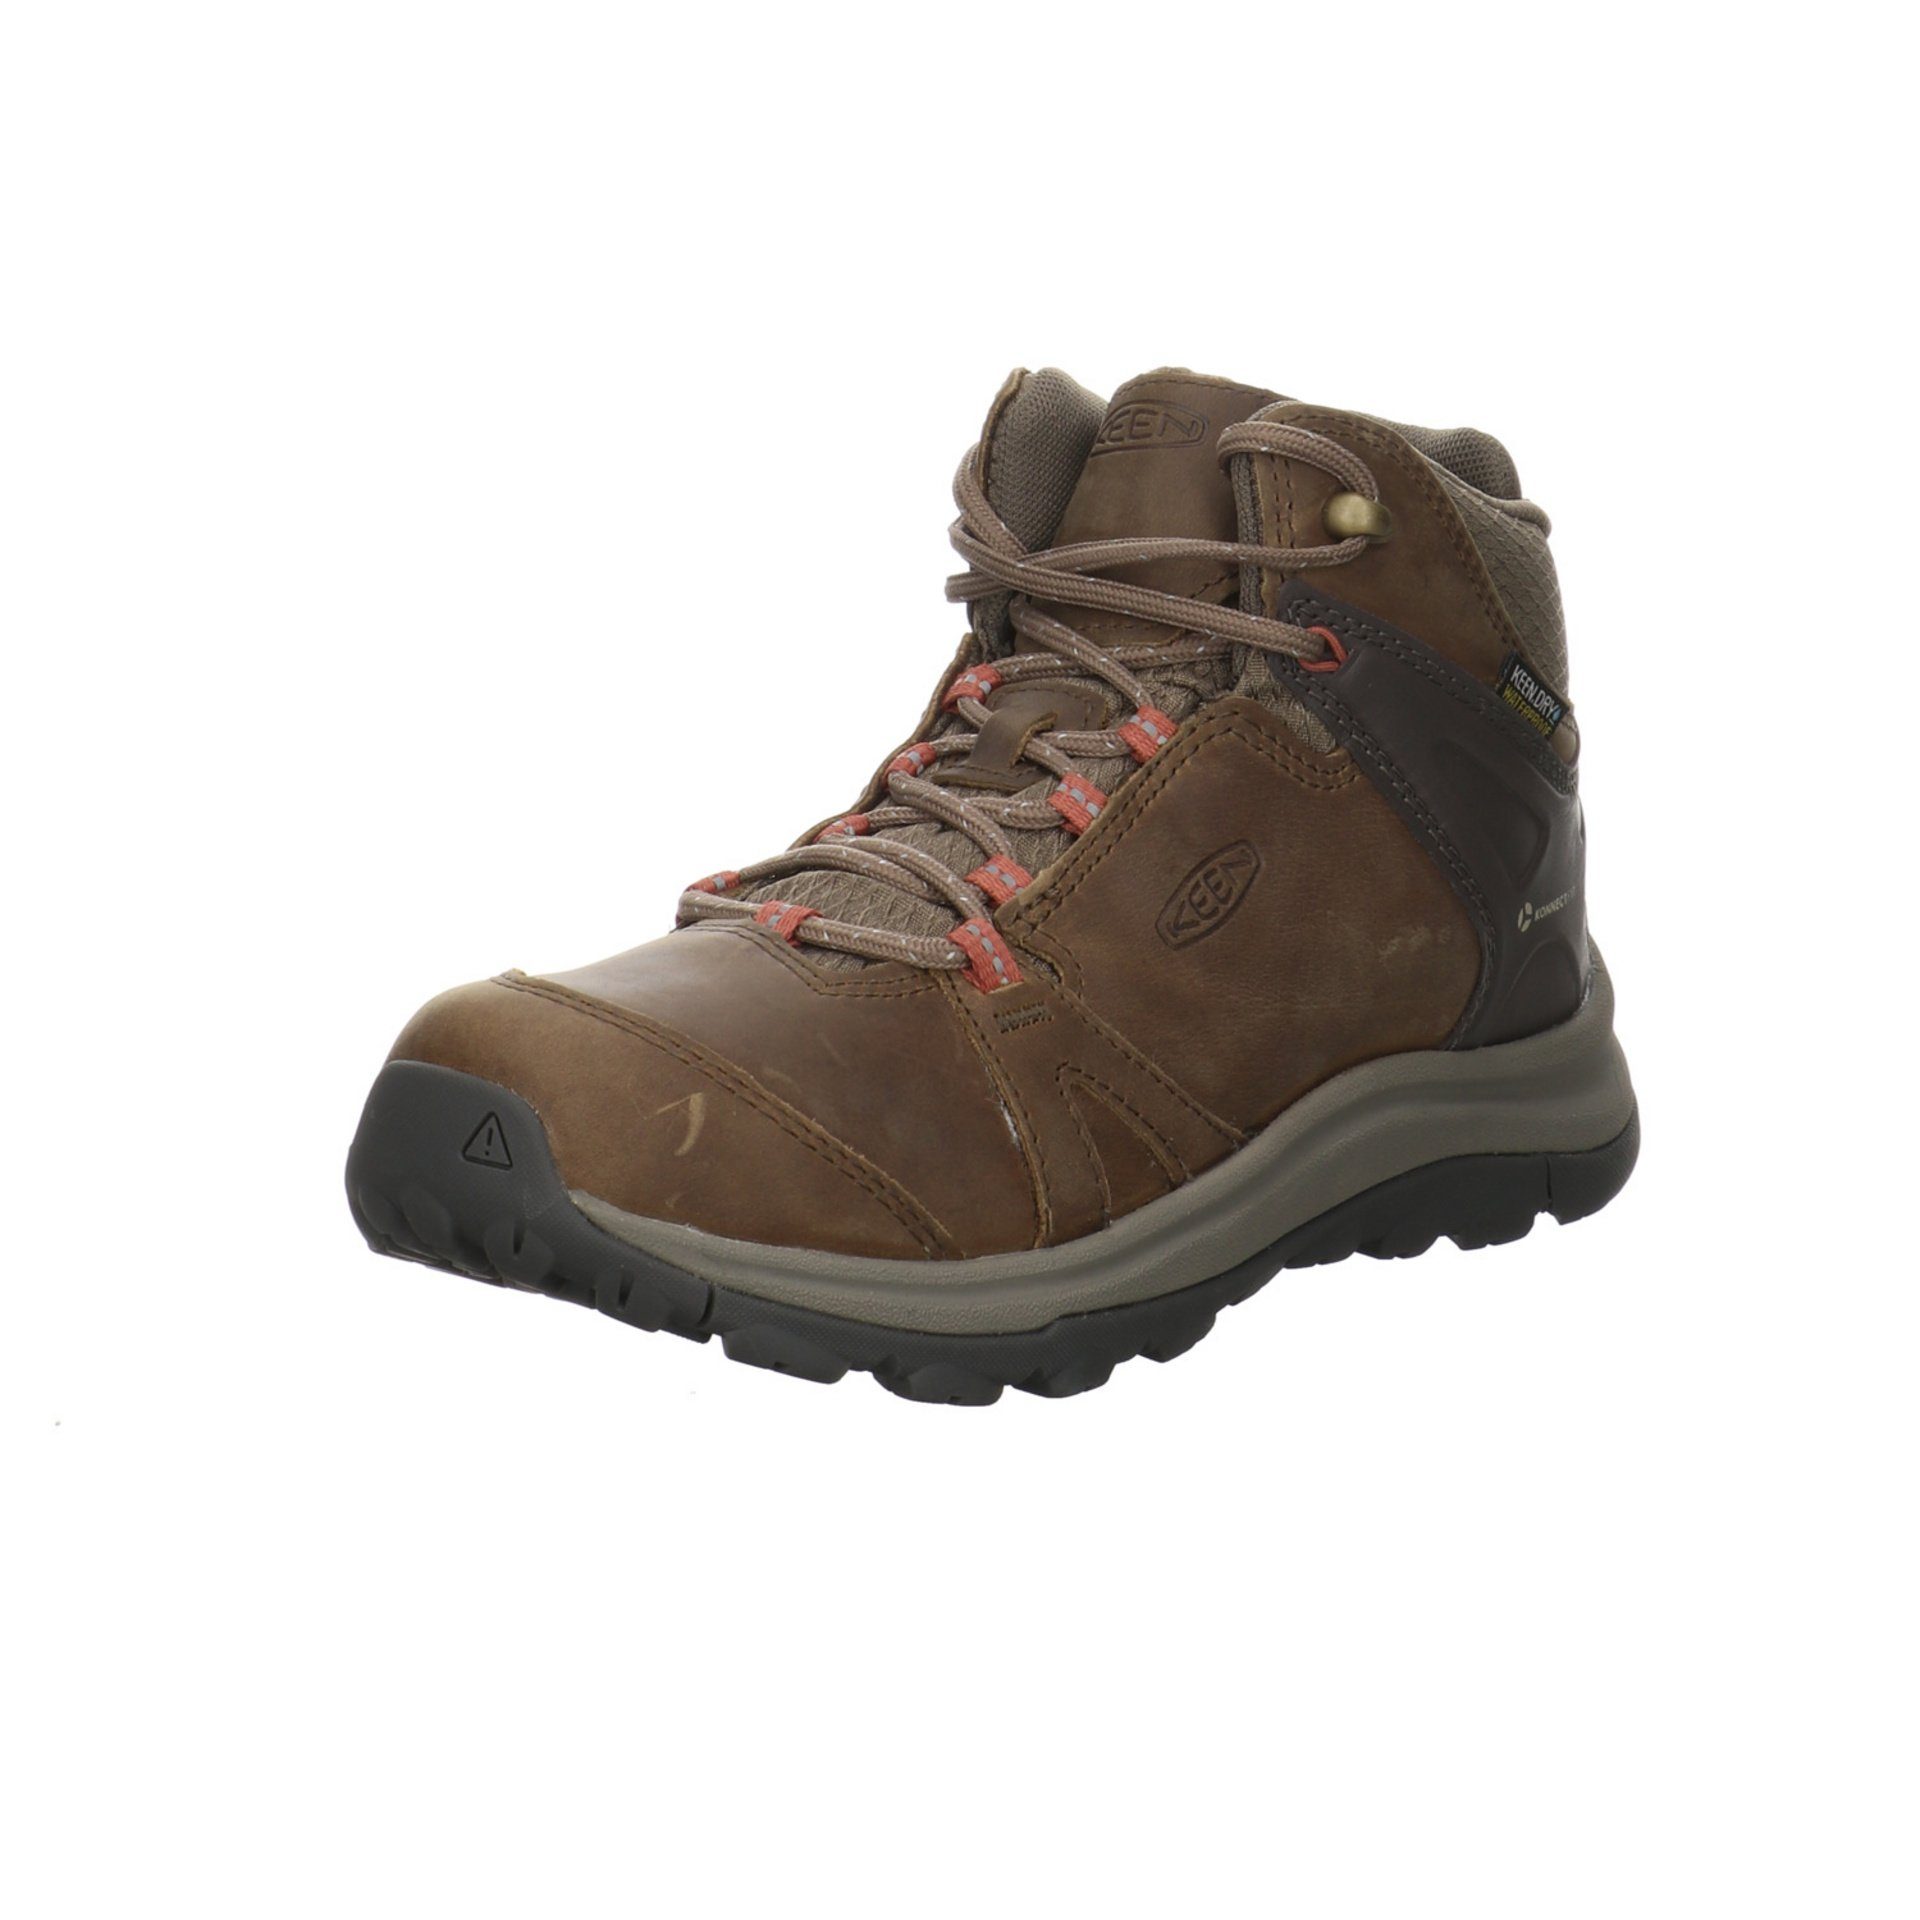 Keen Damen Schuhe Outdoor Terradora ll Outdoorschuh Outdoorschuh Leder-/Textilkombination Brindle/Redwood